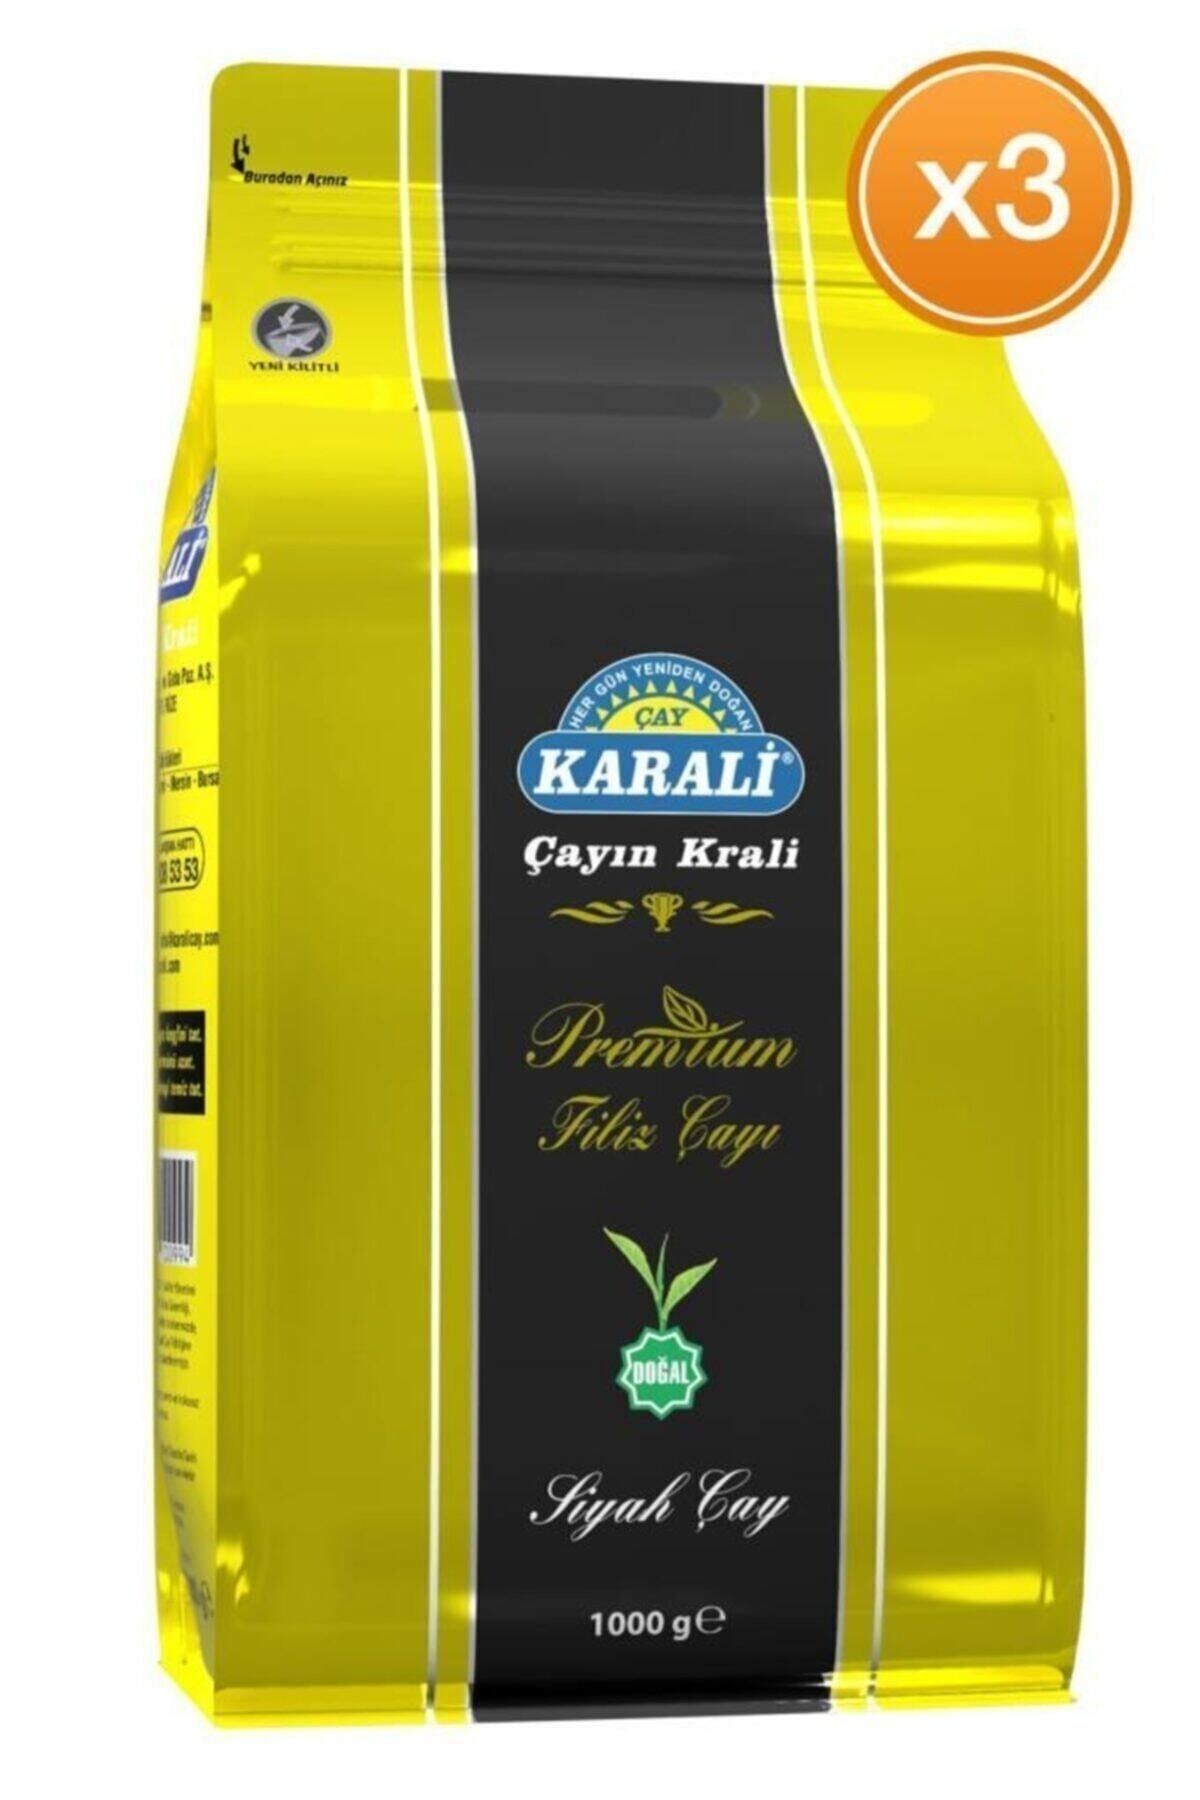 Karali Çay Karali Premium Filiz Dökme Çay 1 Kg X 3 Adet Rize Gazi Gıda